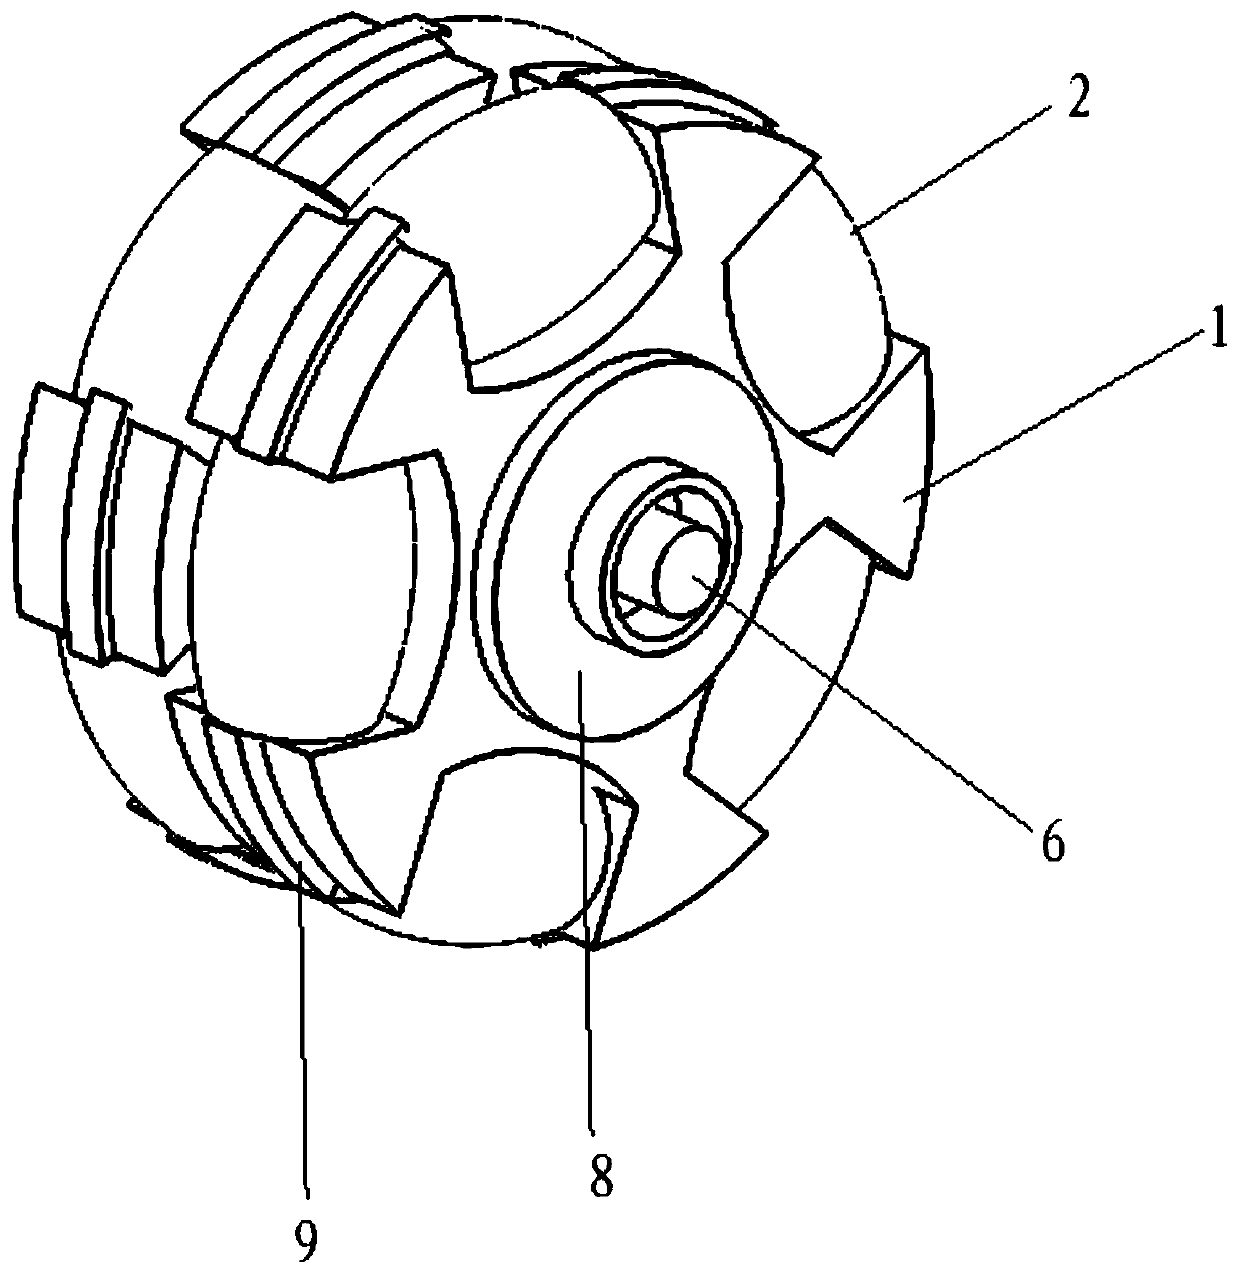 A hub drive motor based on mecanum wheel